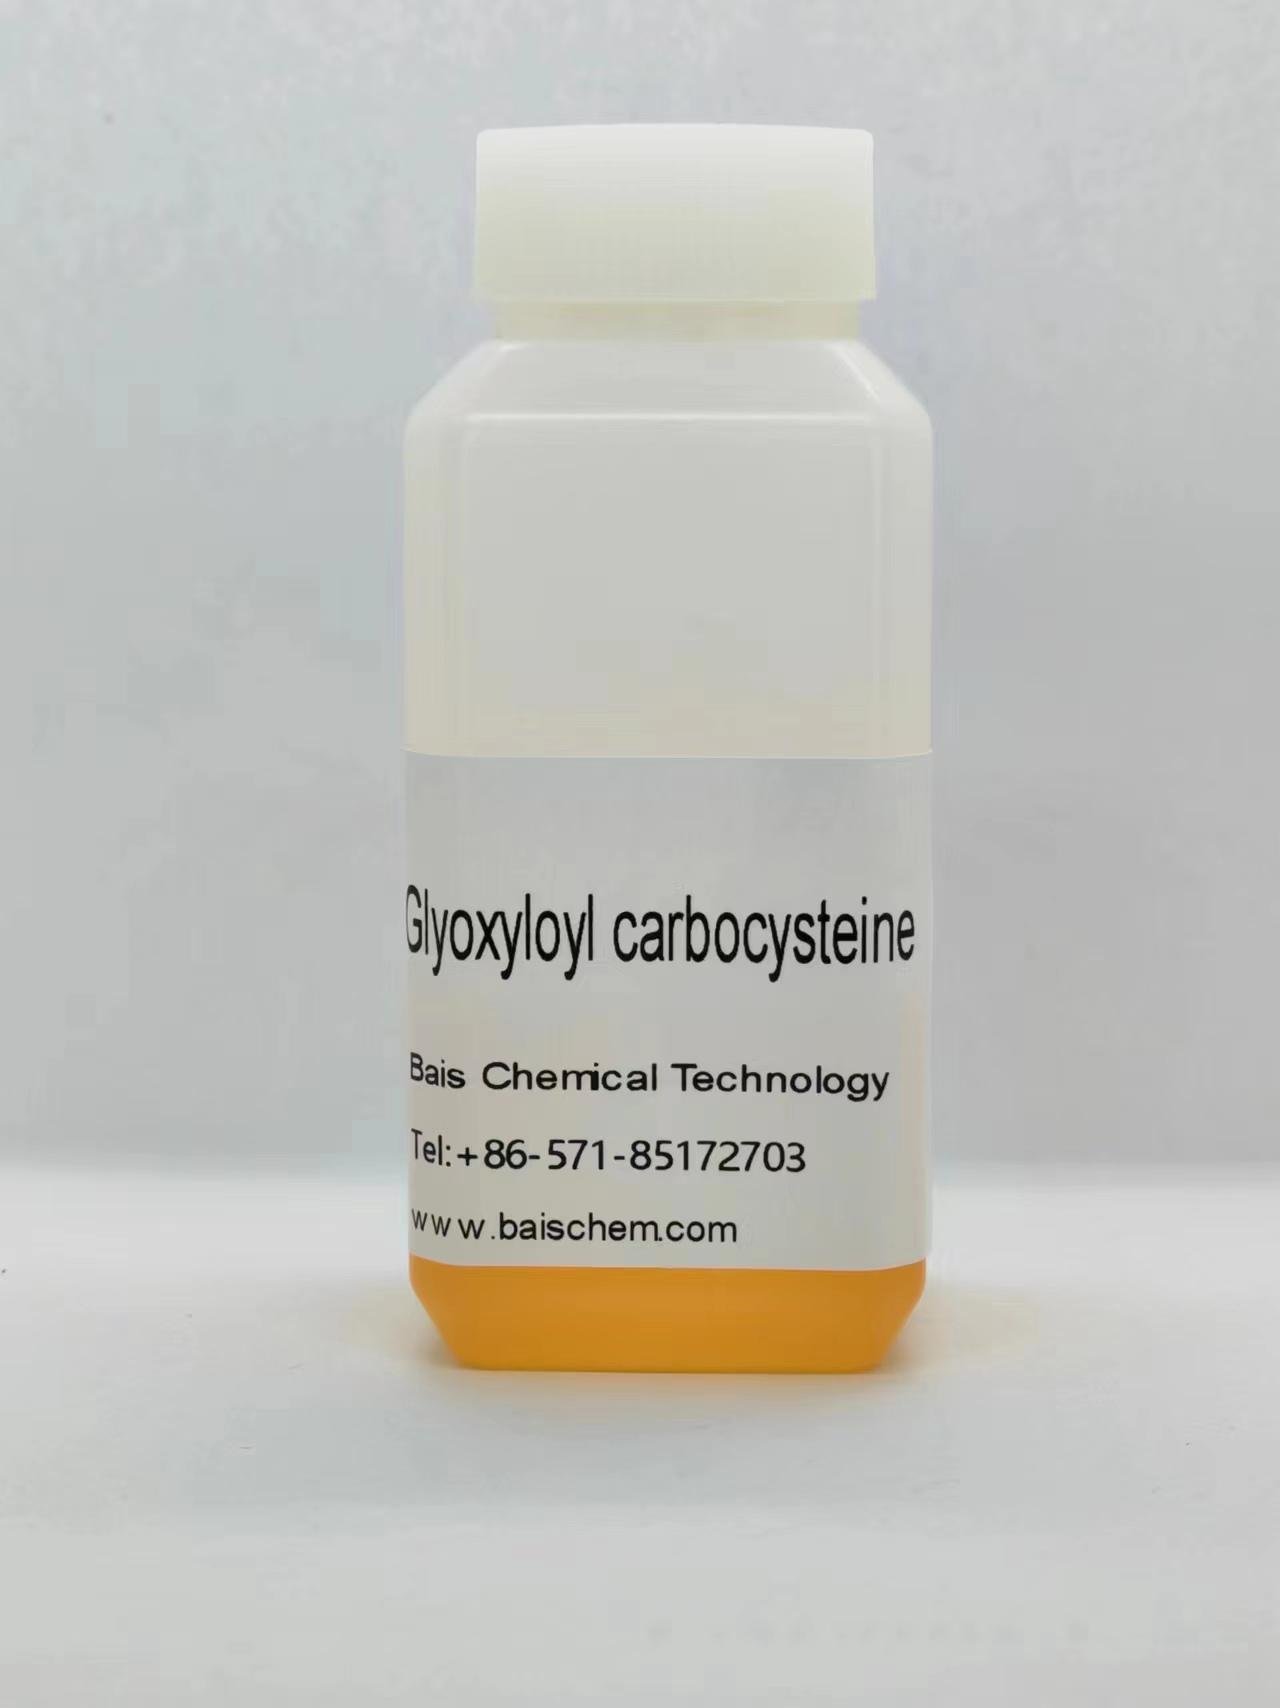 Glyoxyloyl carbocysteine